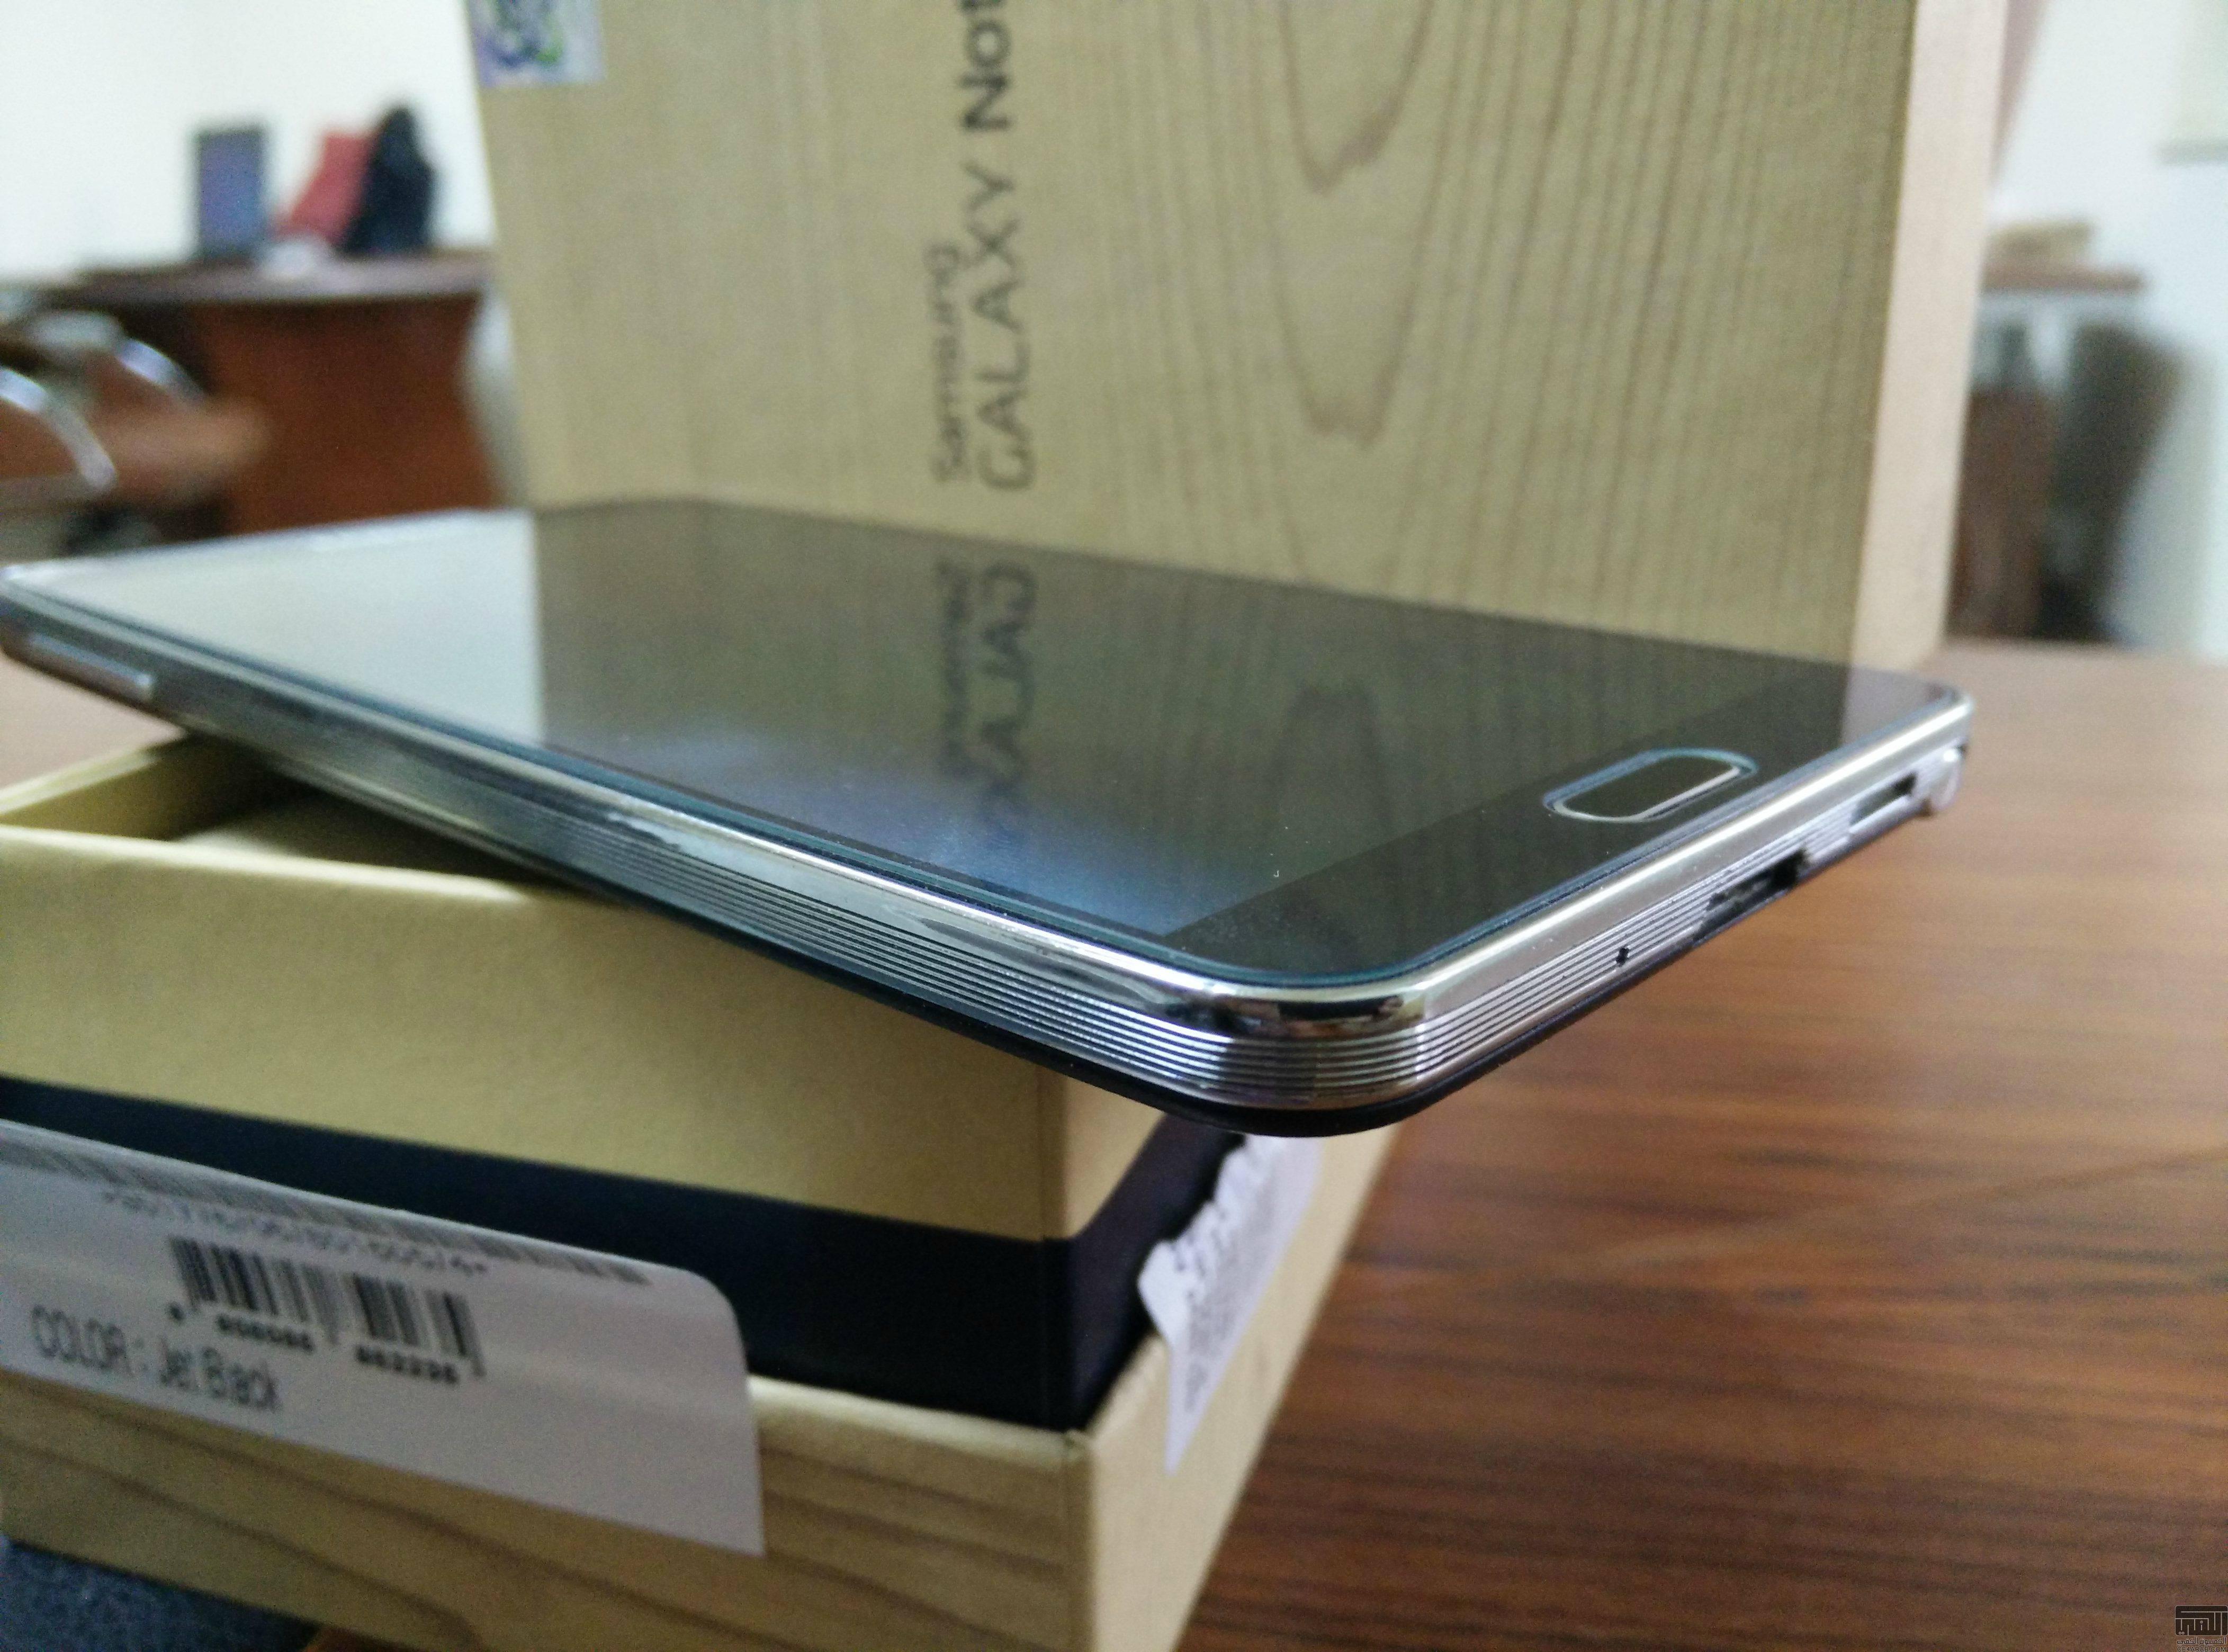 جالكسي نوت 3 أسود نظيف - Samsung Galaxy note3 - 32G - 4G